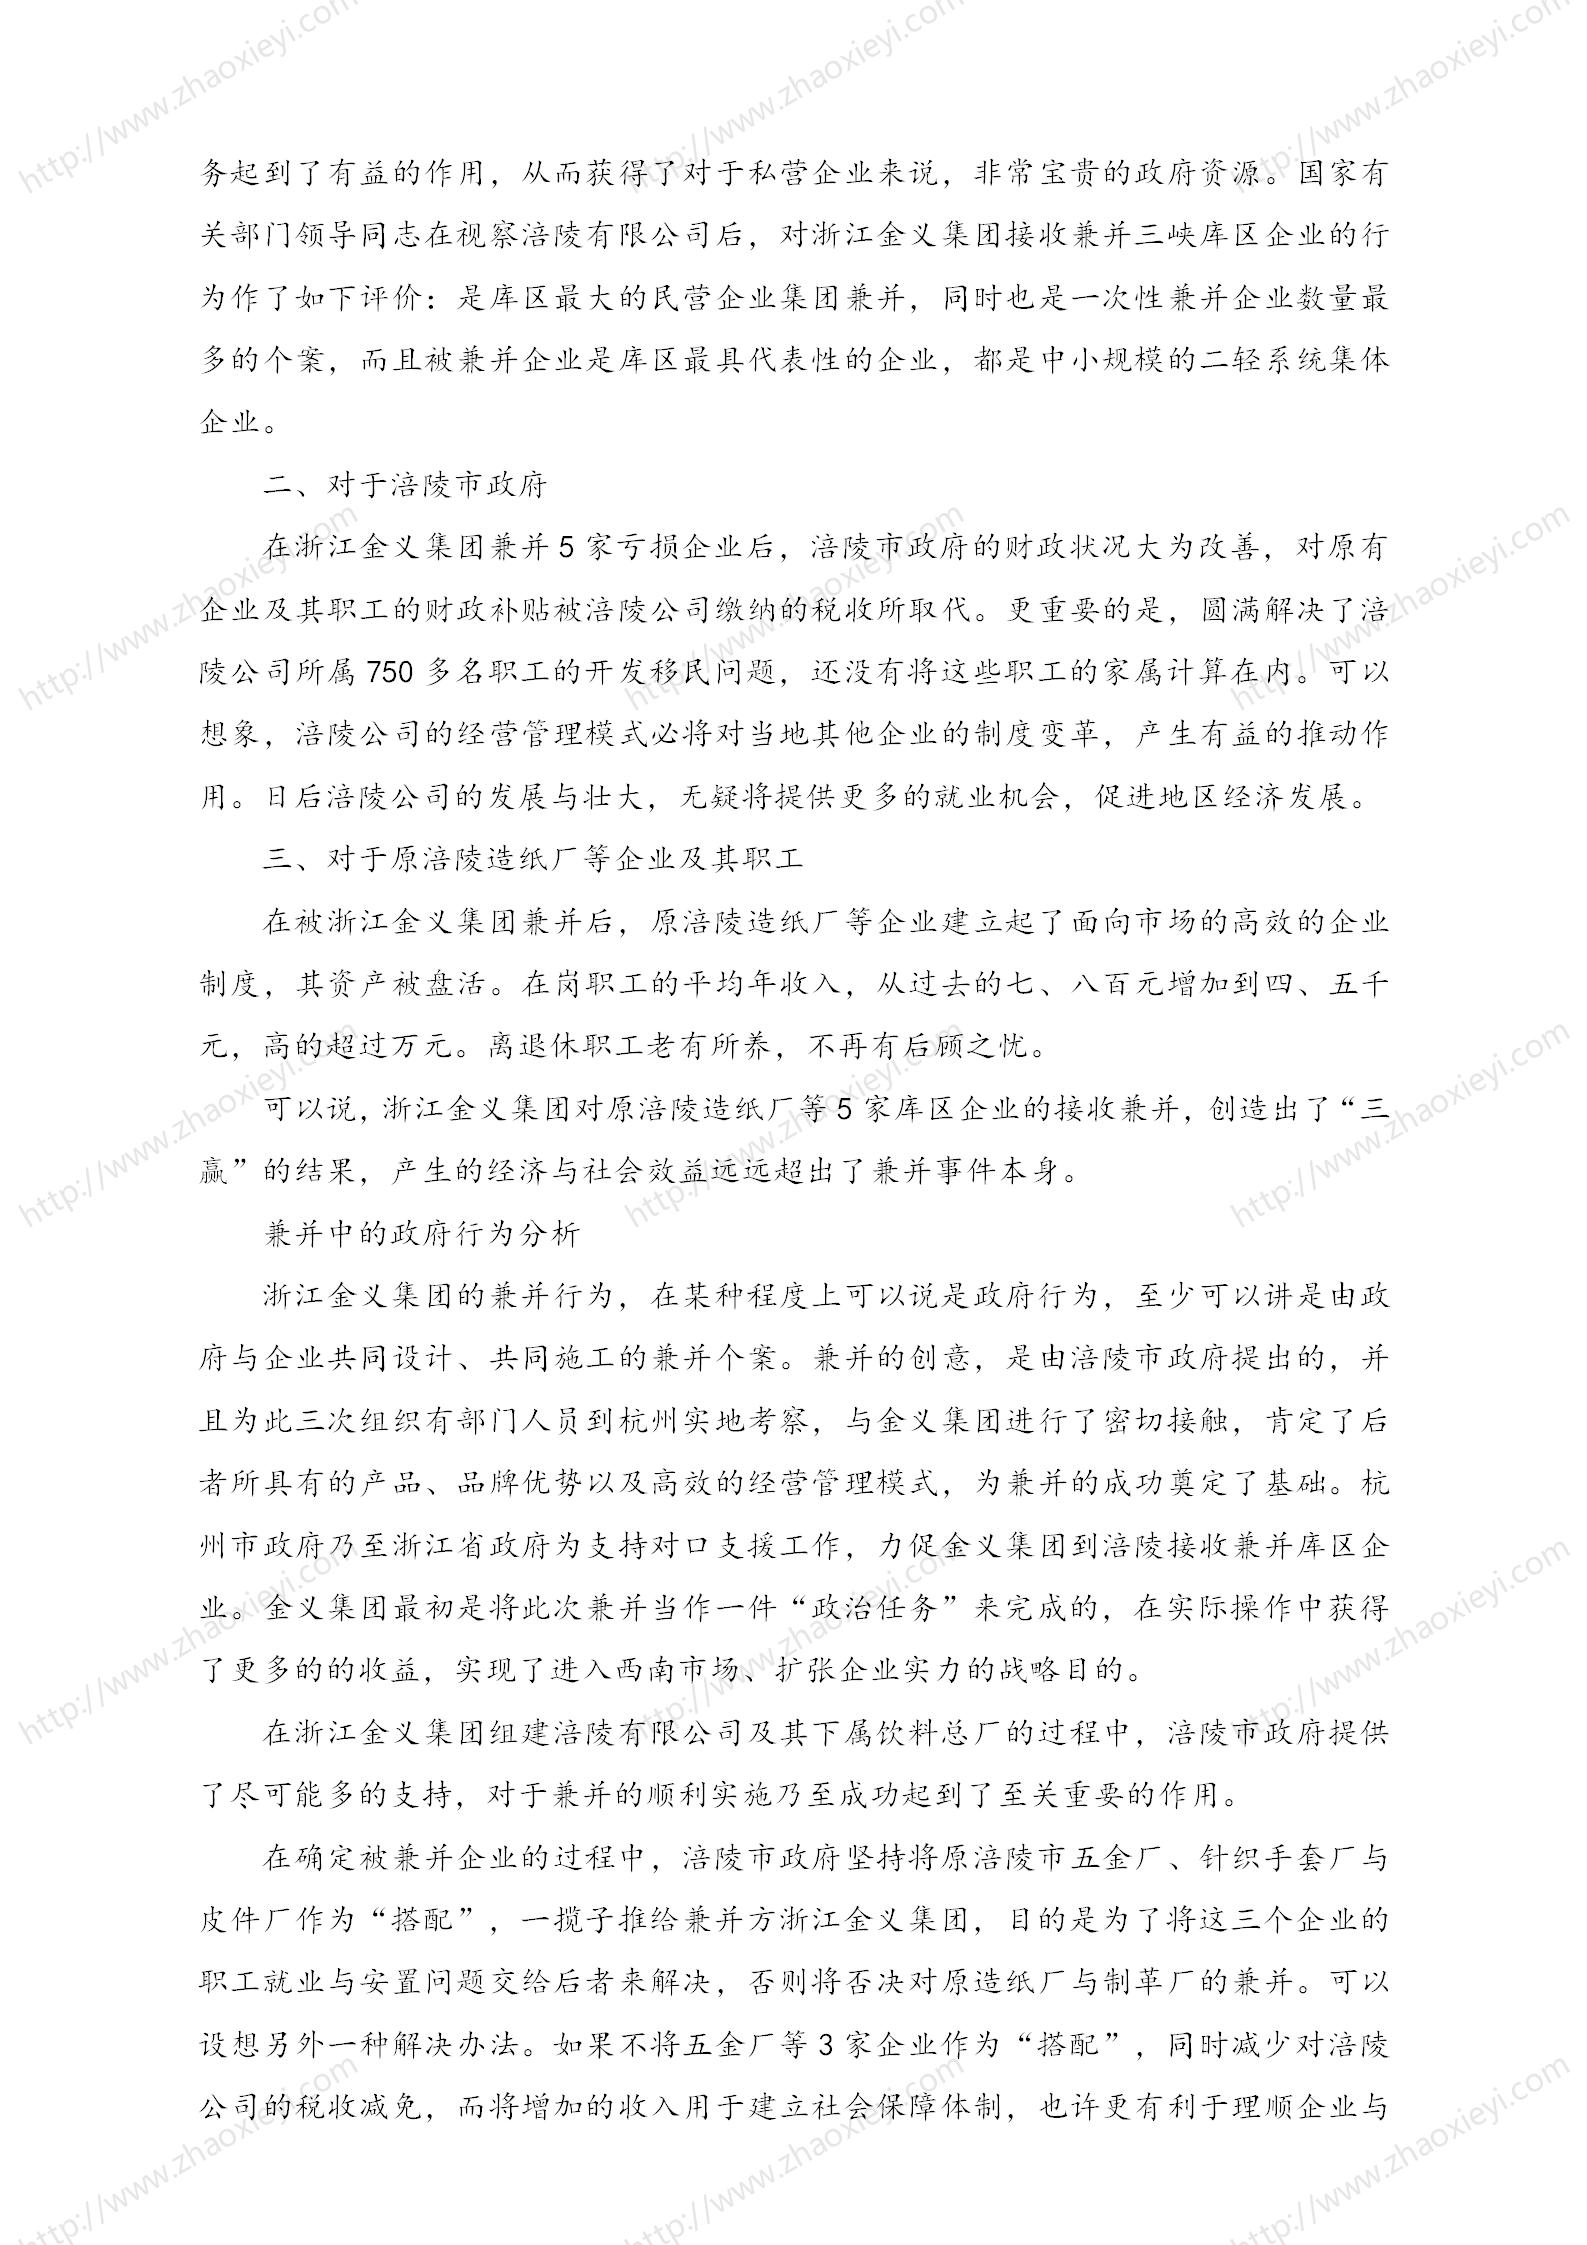 中国企业并购经典案例_131.jpg